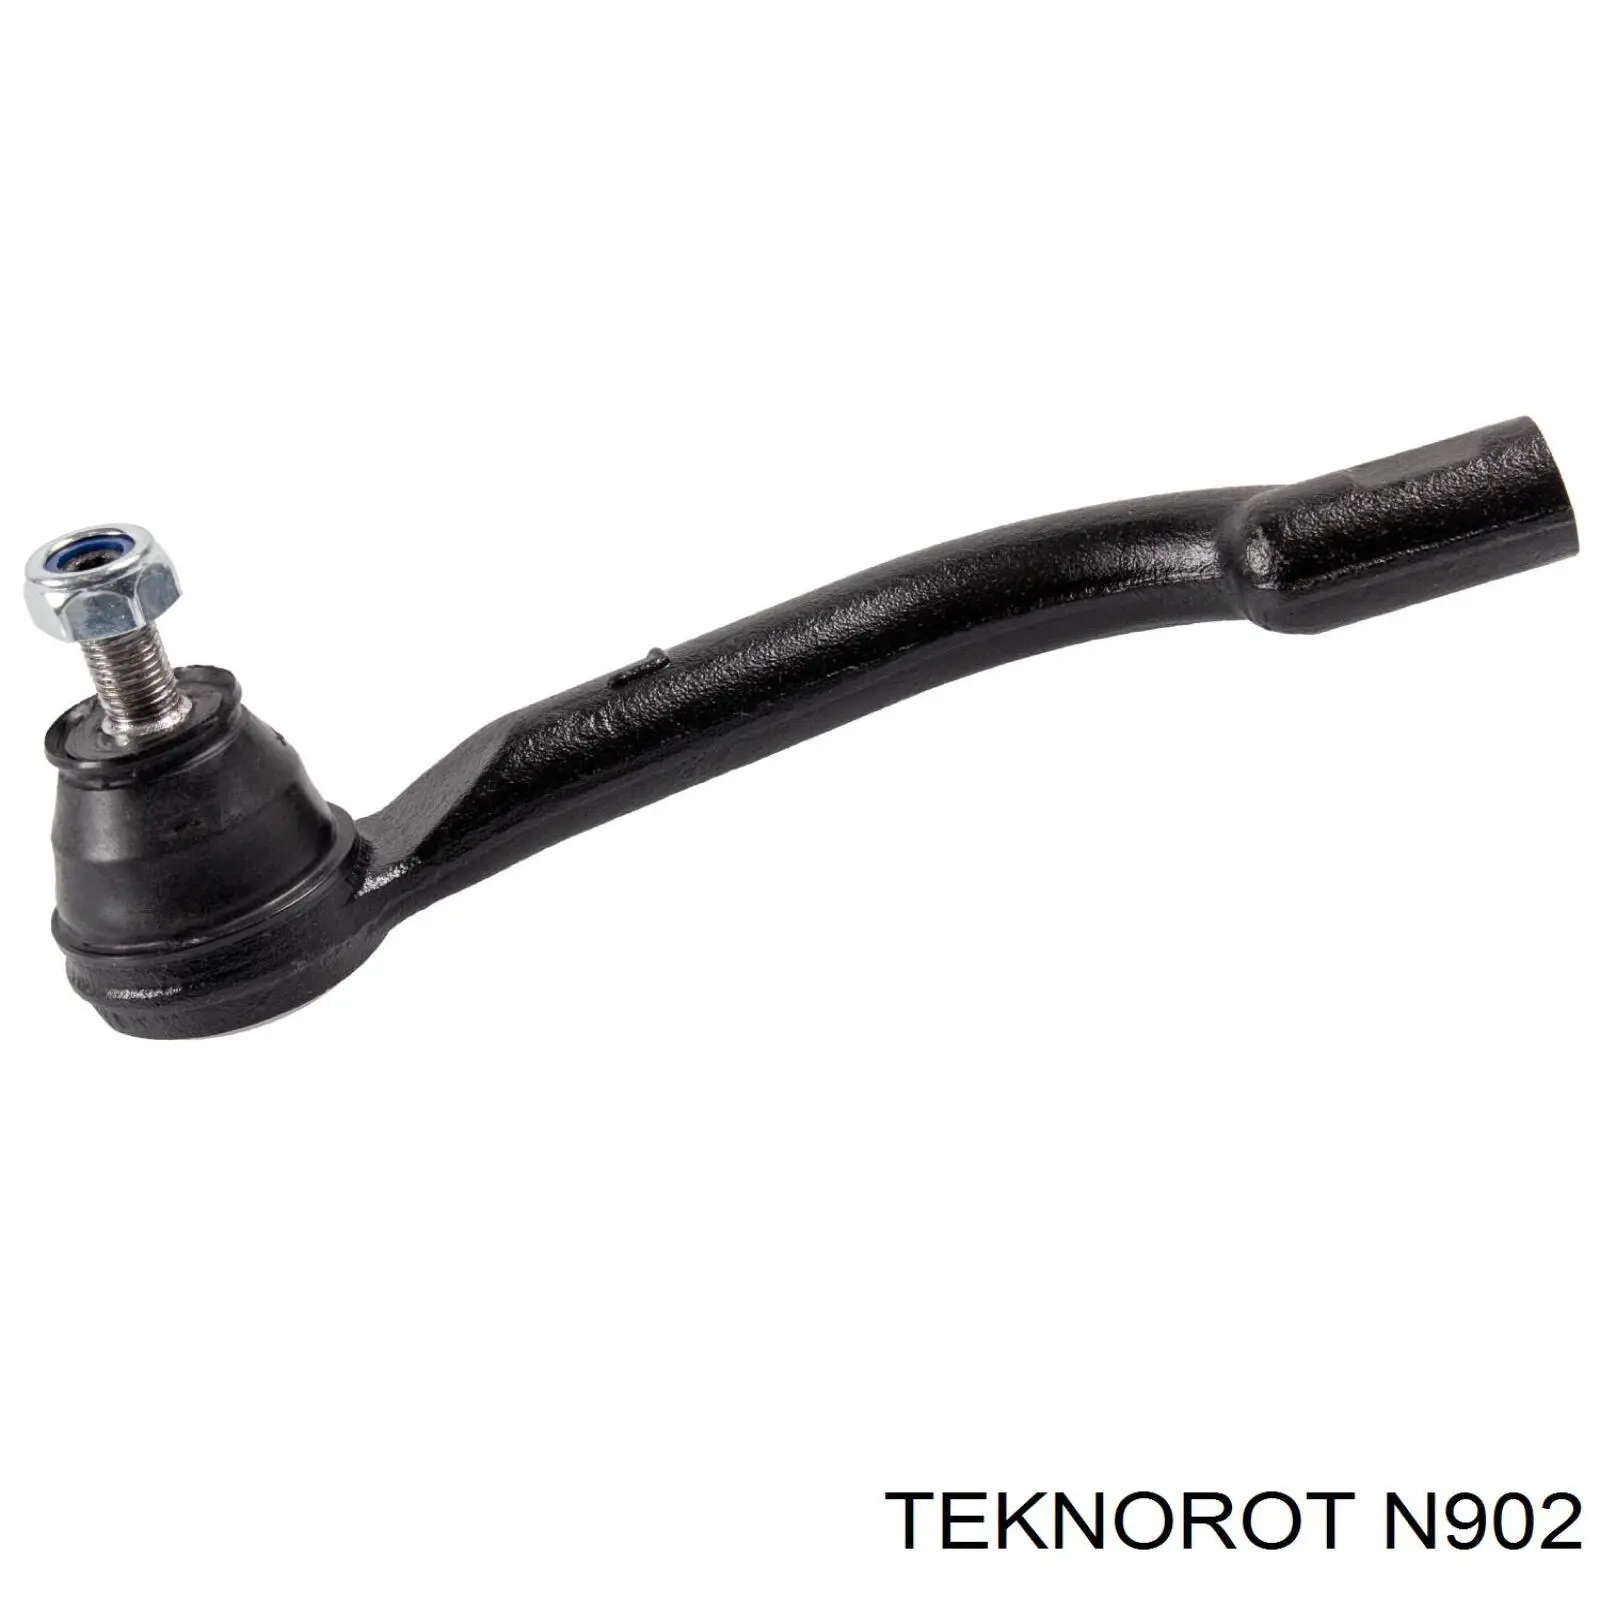 N902 Teknorot ponta externa da barra de direção